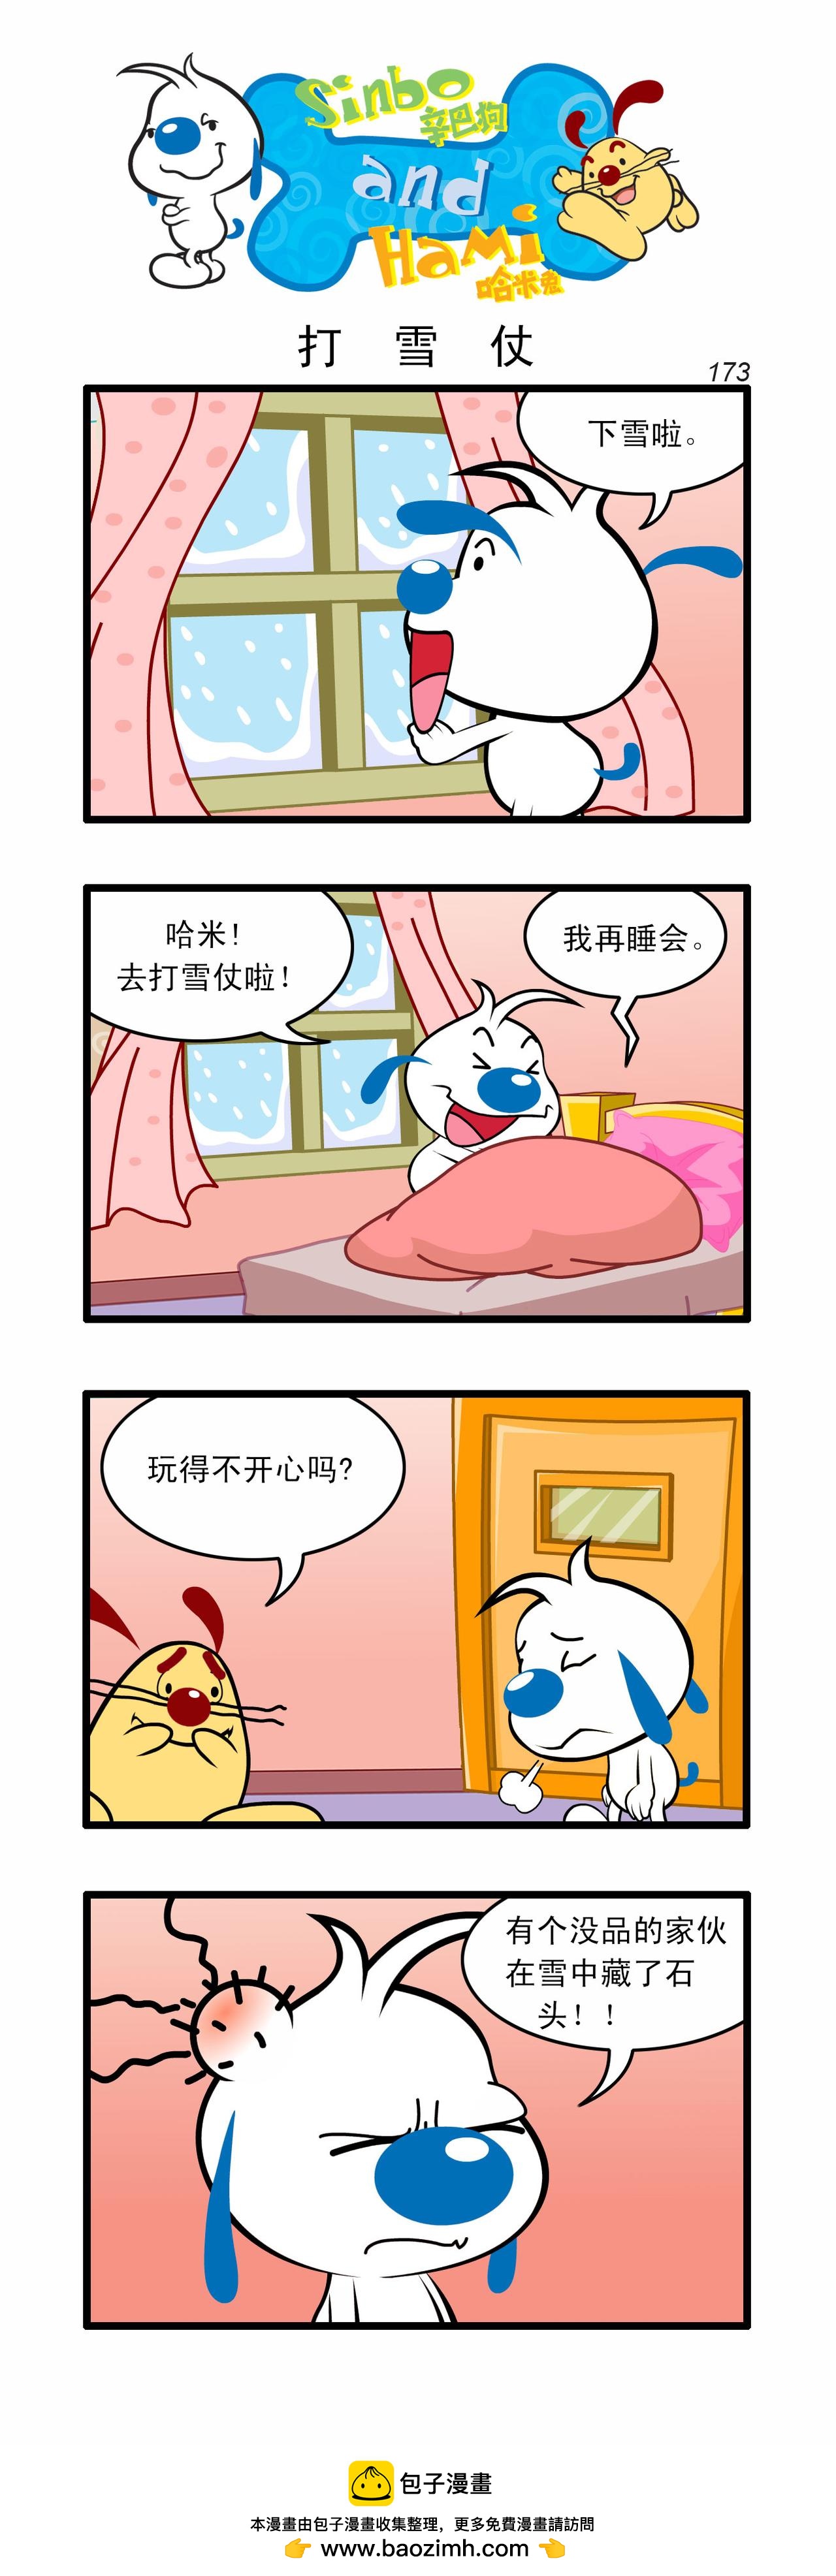 辛巴狗日常漫畫 - 四格169 - 1